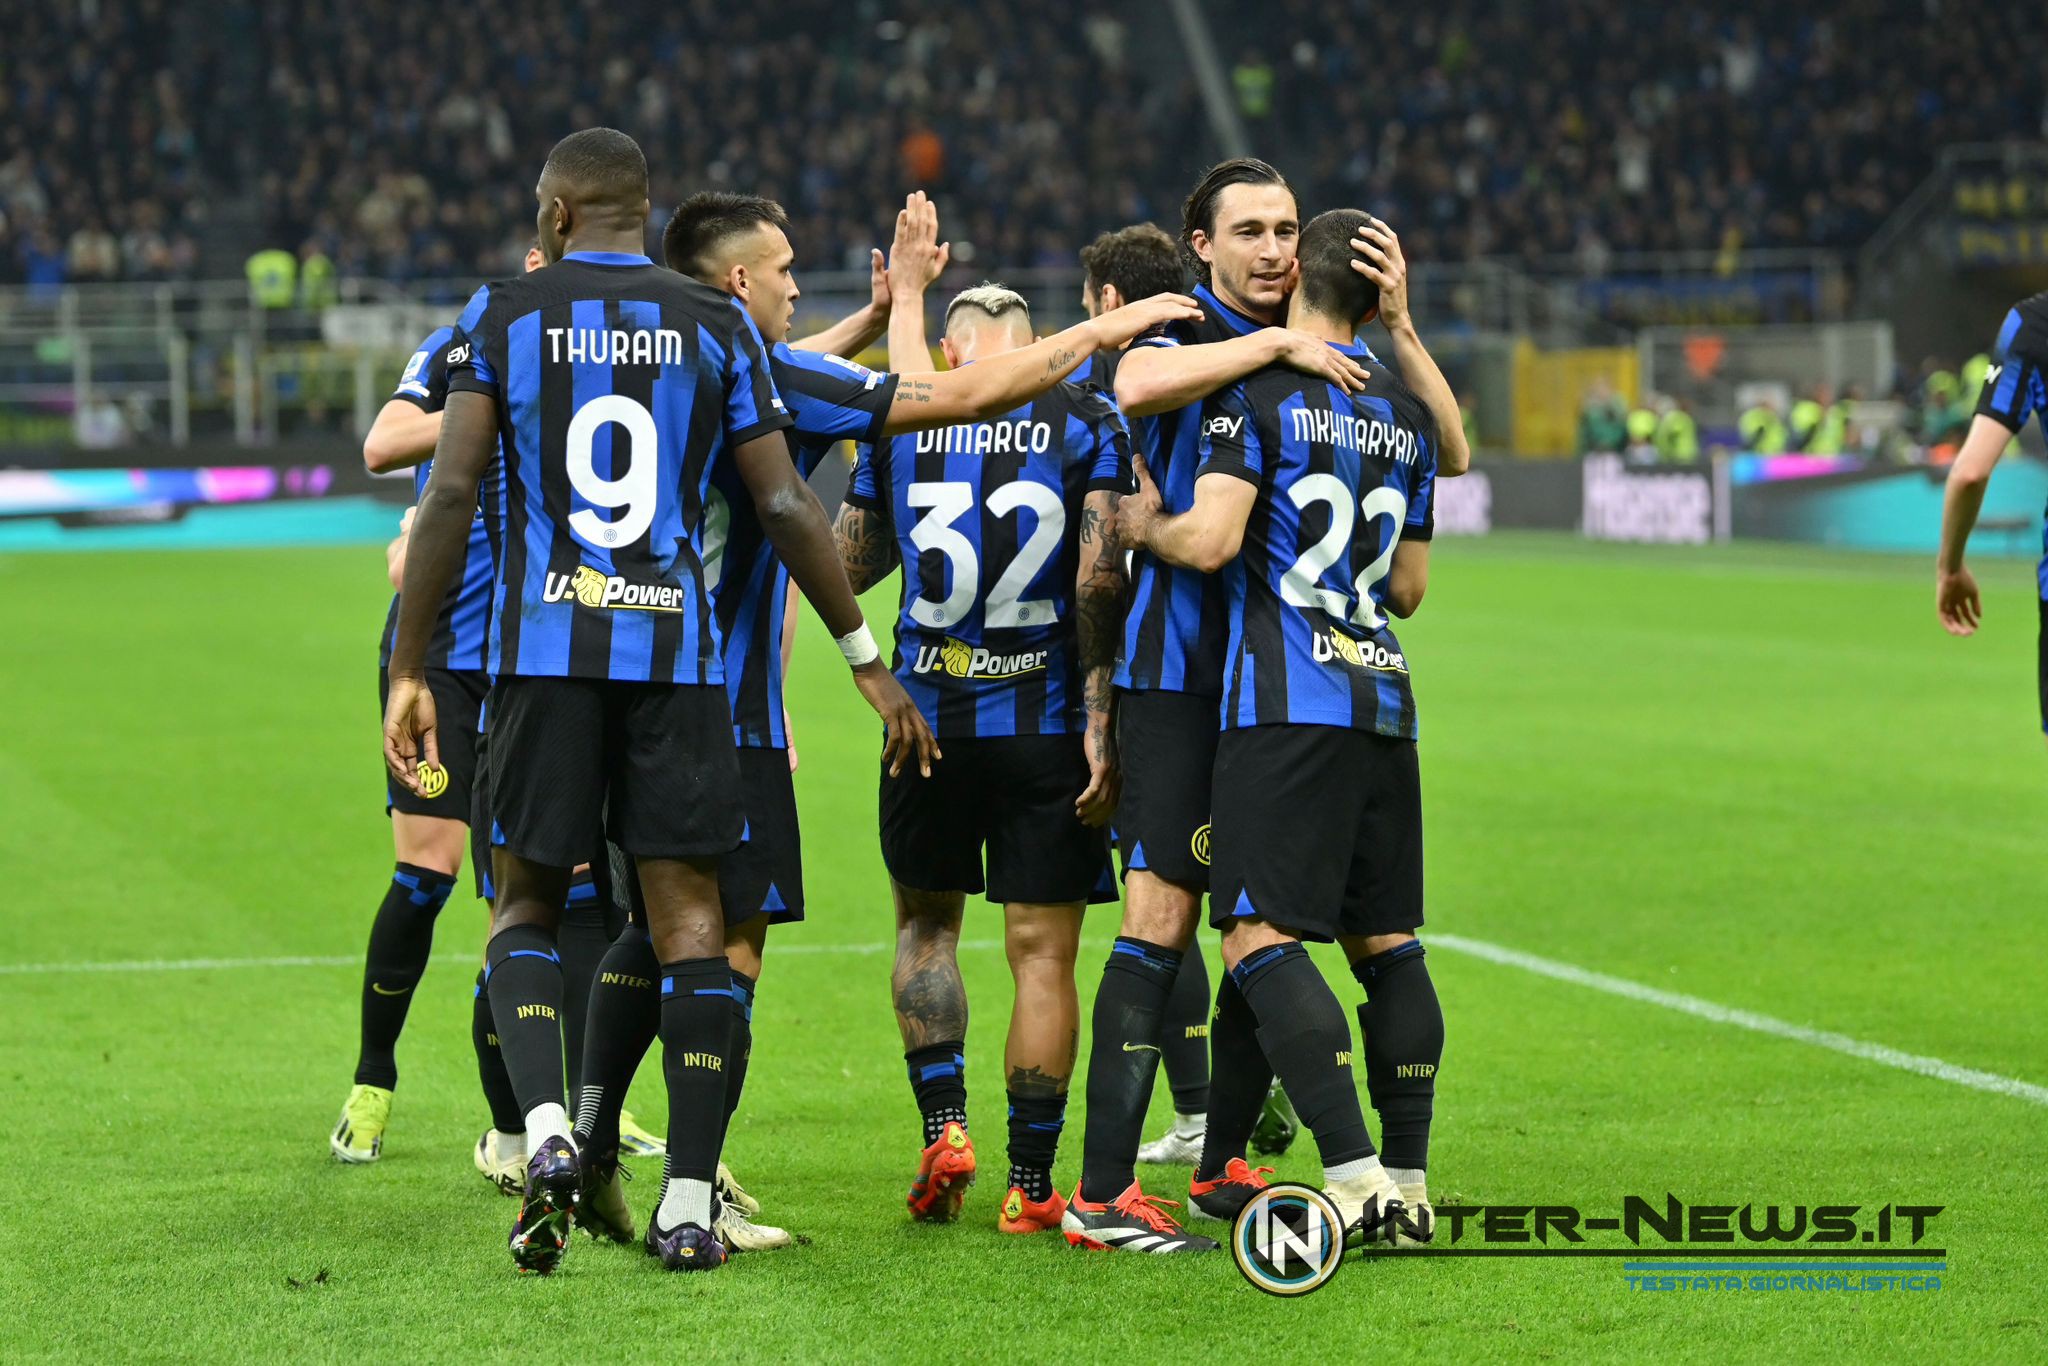 Esultanza in Inter-Napoli (Photo by Tommaso Fimiano/Inter-News.it ©)